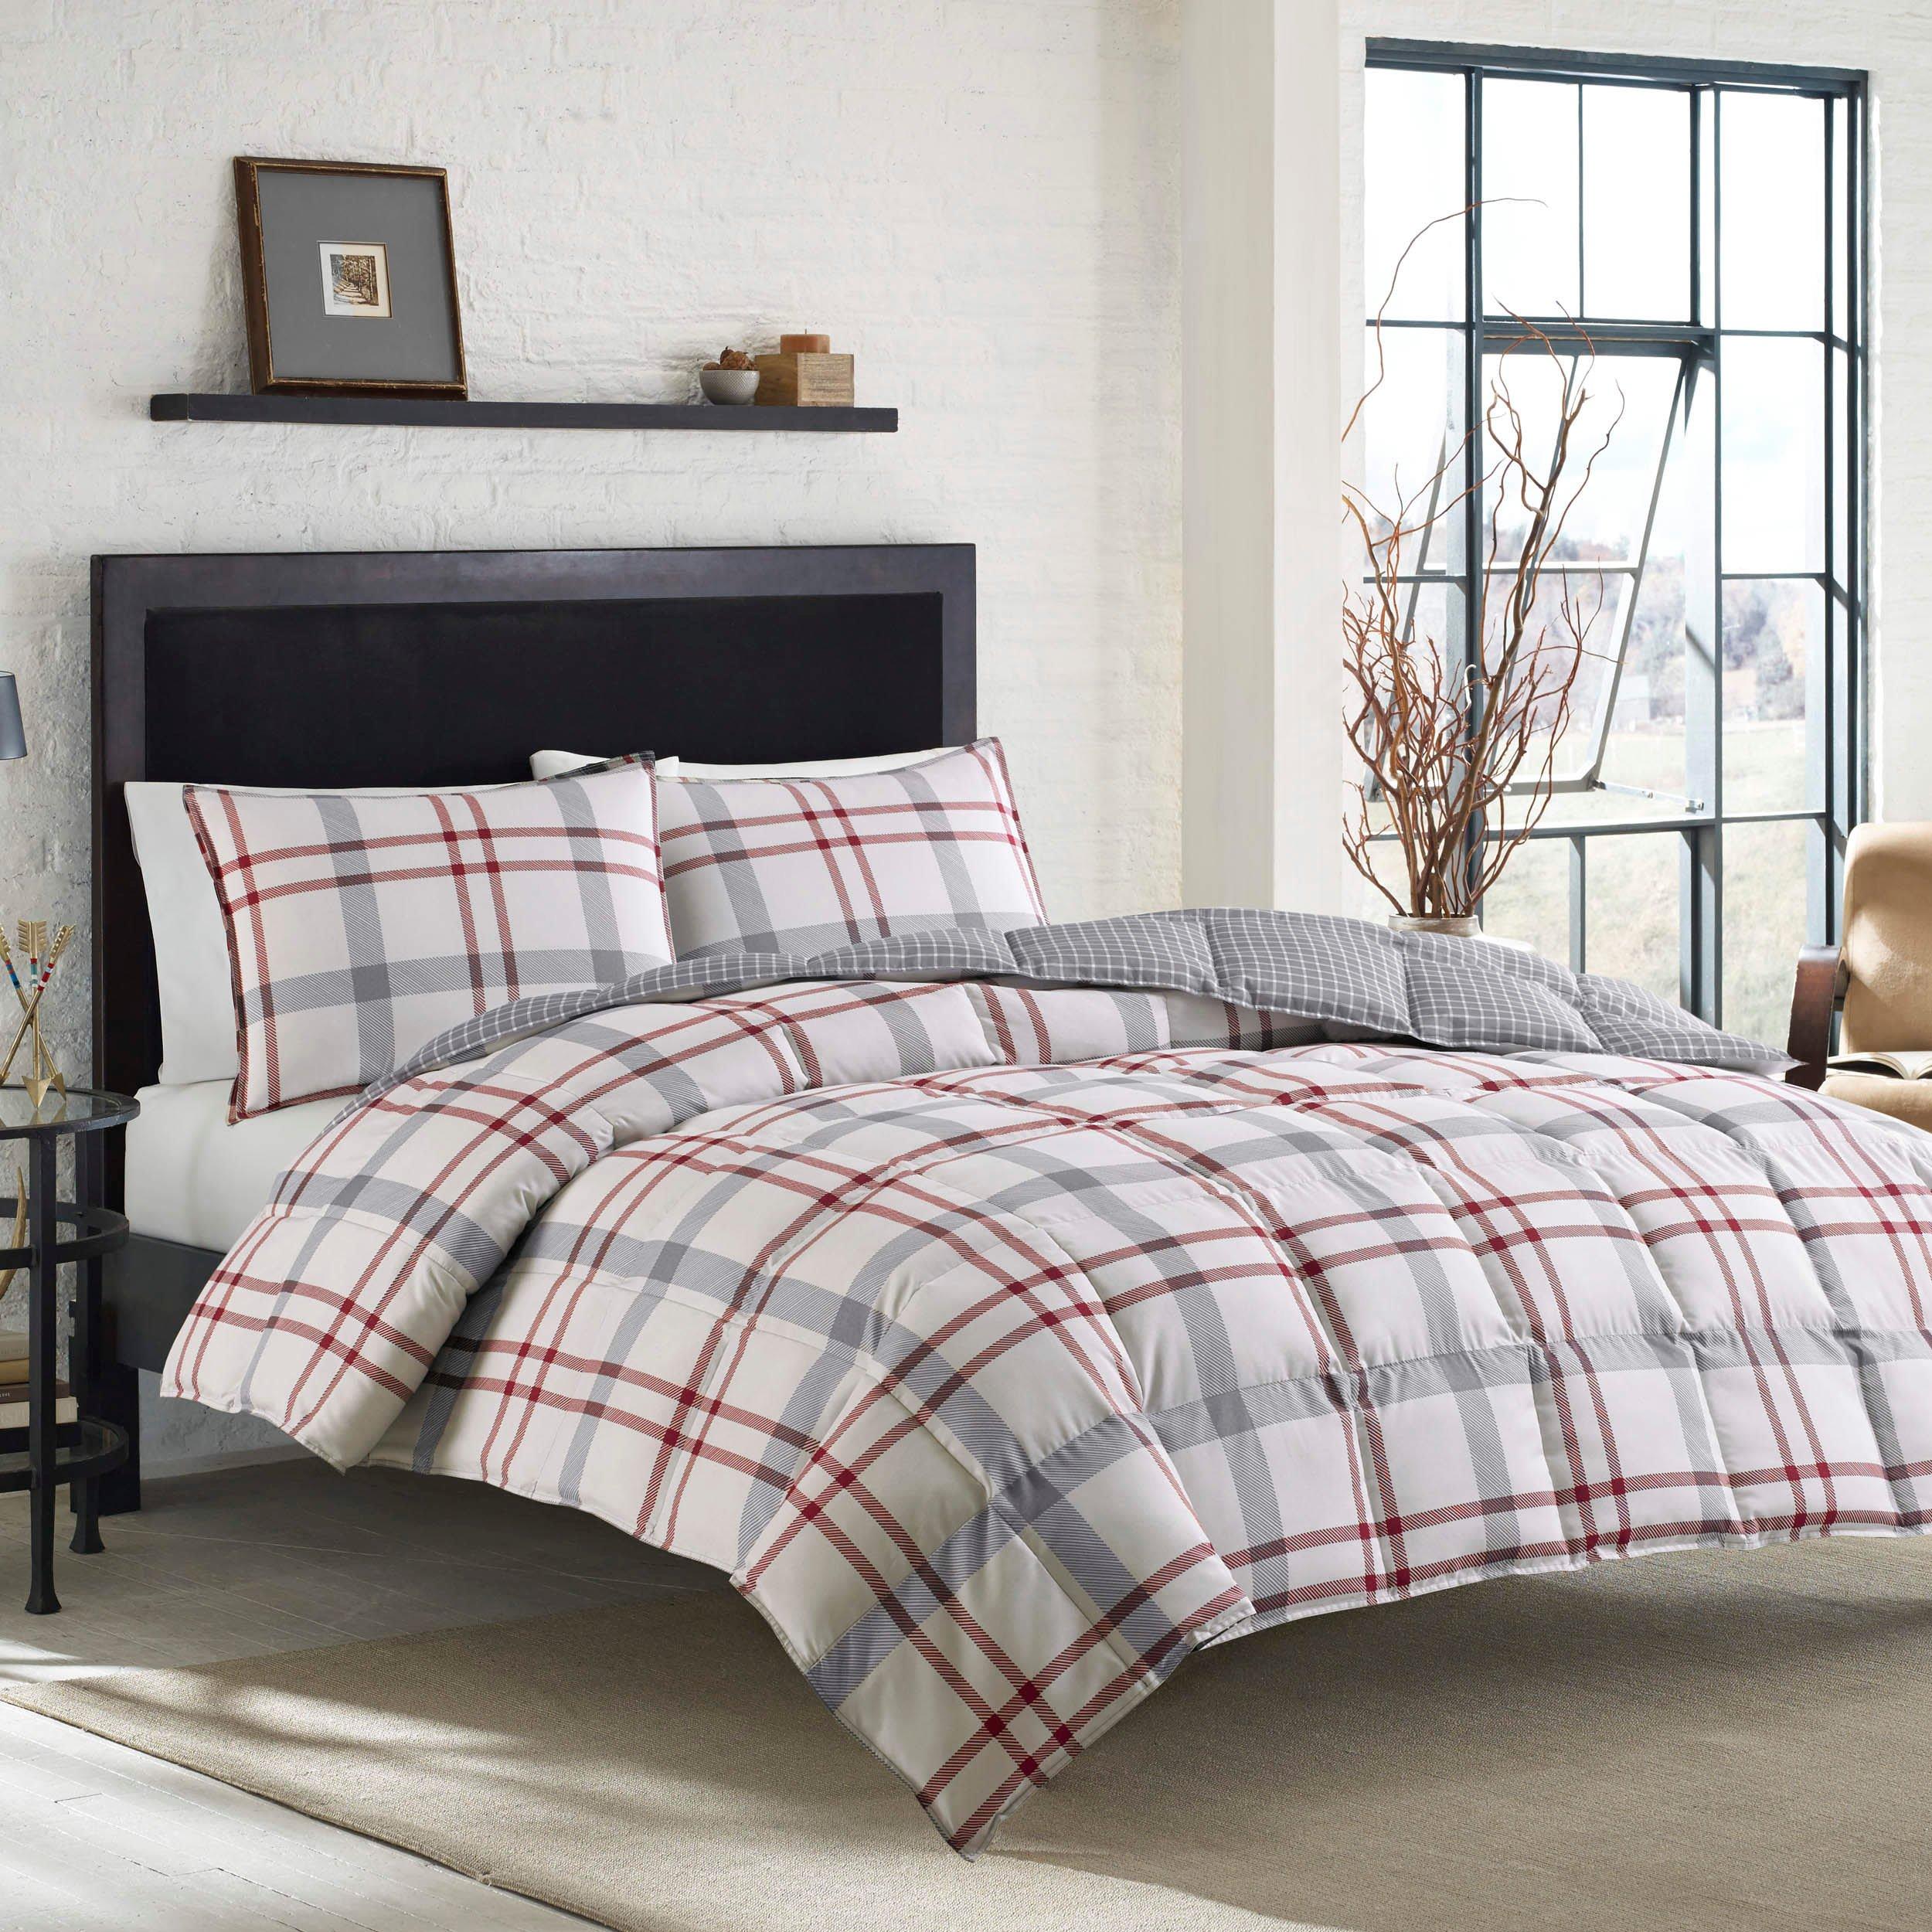 Eddie Bauer Portage Bay 100% Cotton Comforter Bedding Set